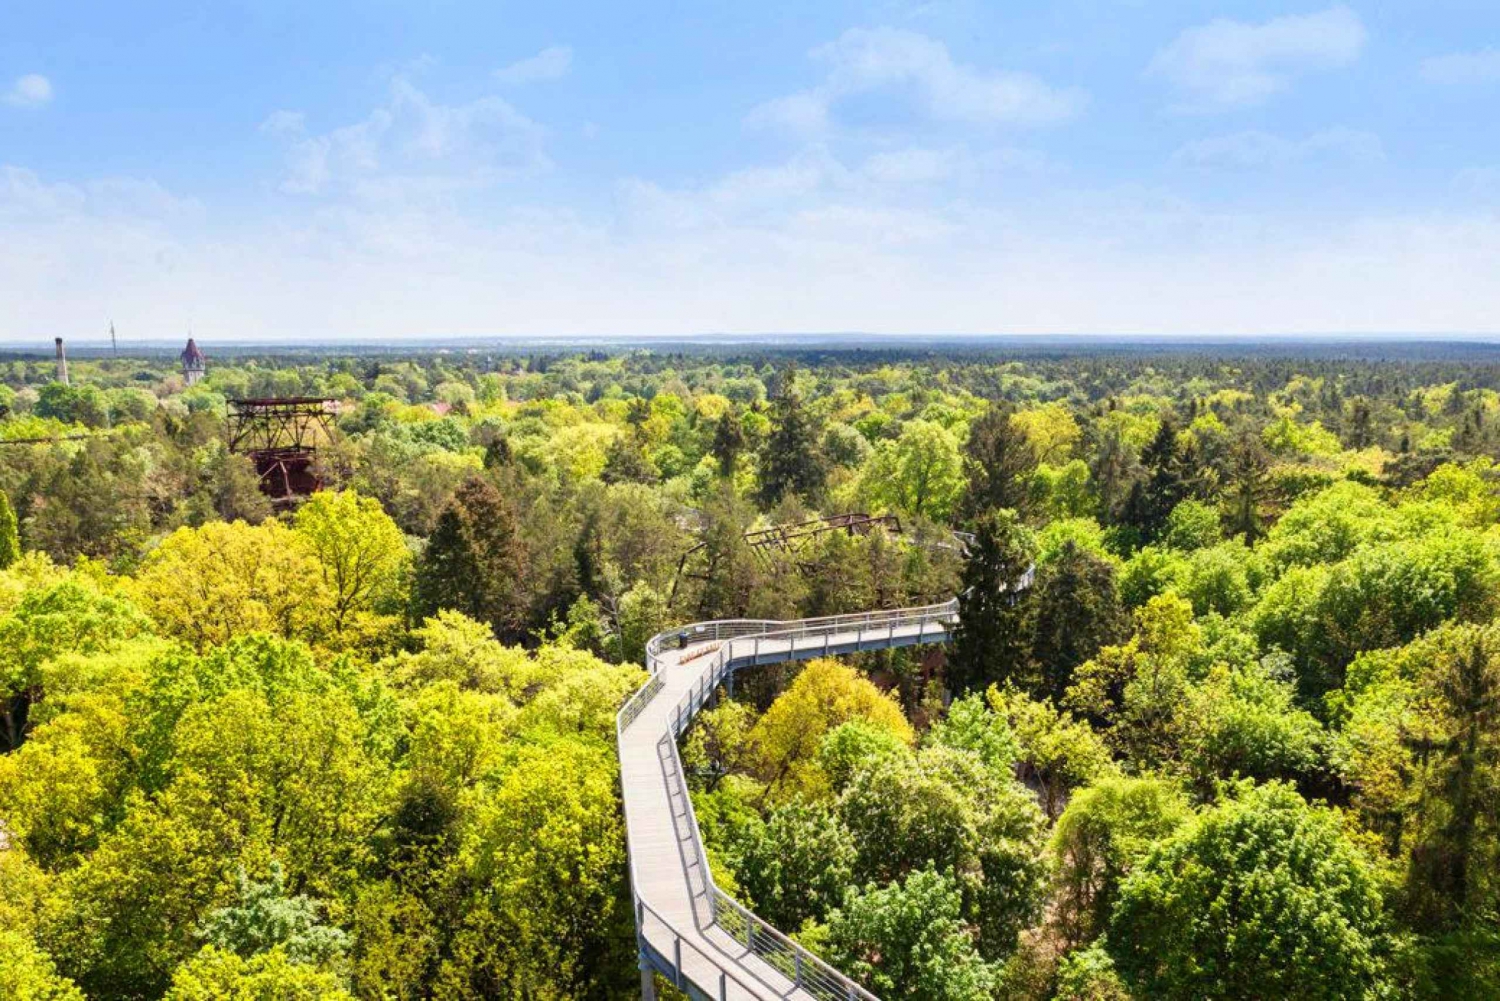 Baum&Zeit Beelitz-Heilstätten : Billets d'entrée pour la promenade dans les arbres